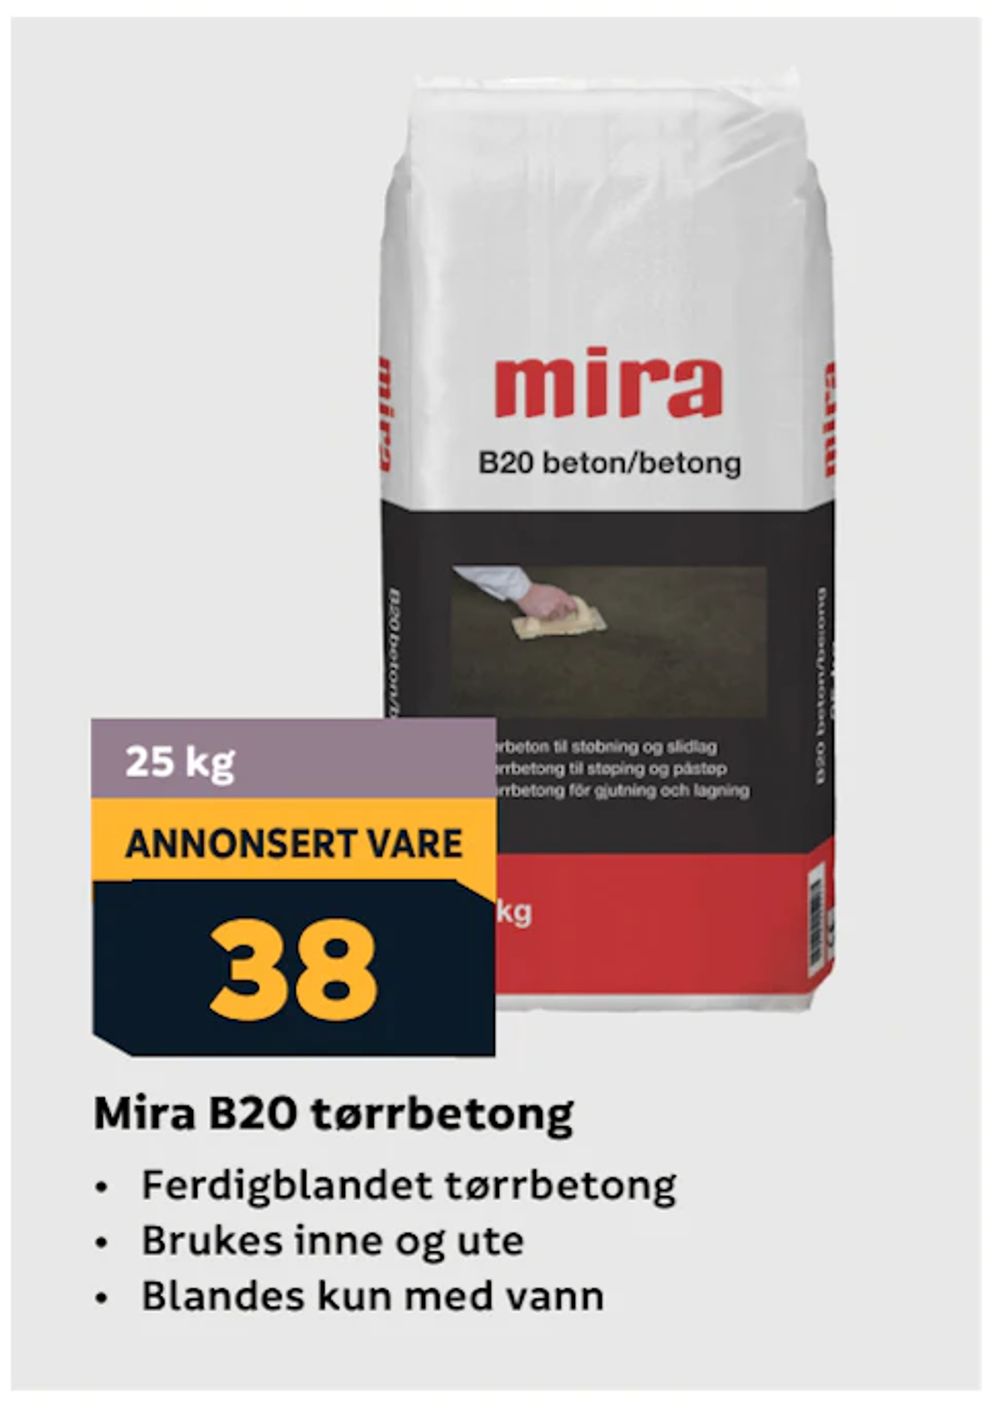 Tilbud på Mira B20 tørrbetong fra Megaflis til 38 kr